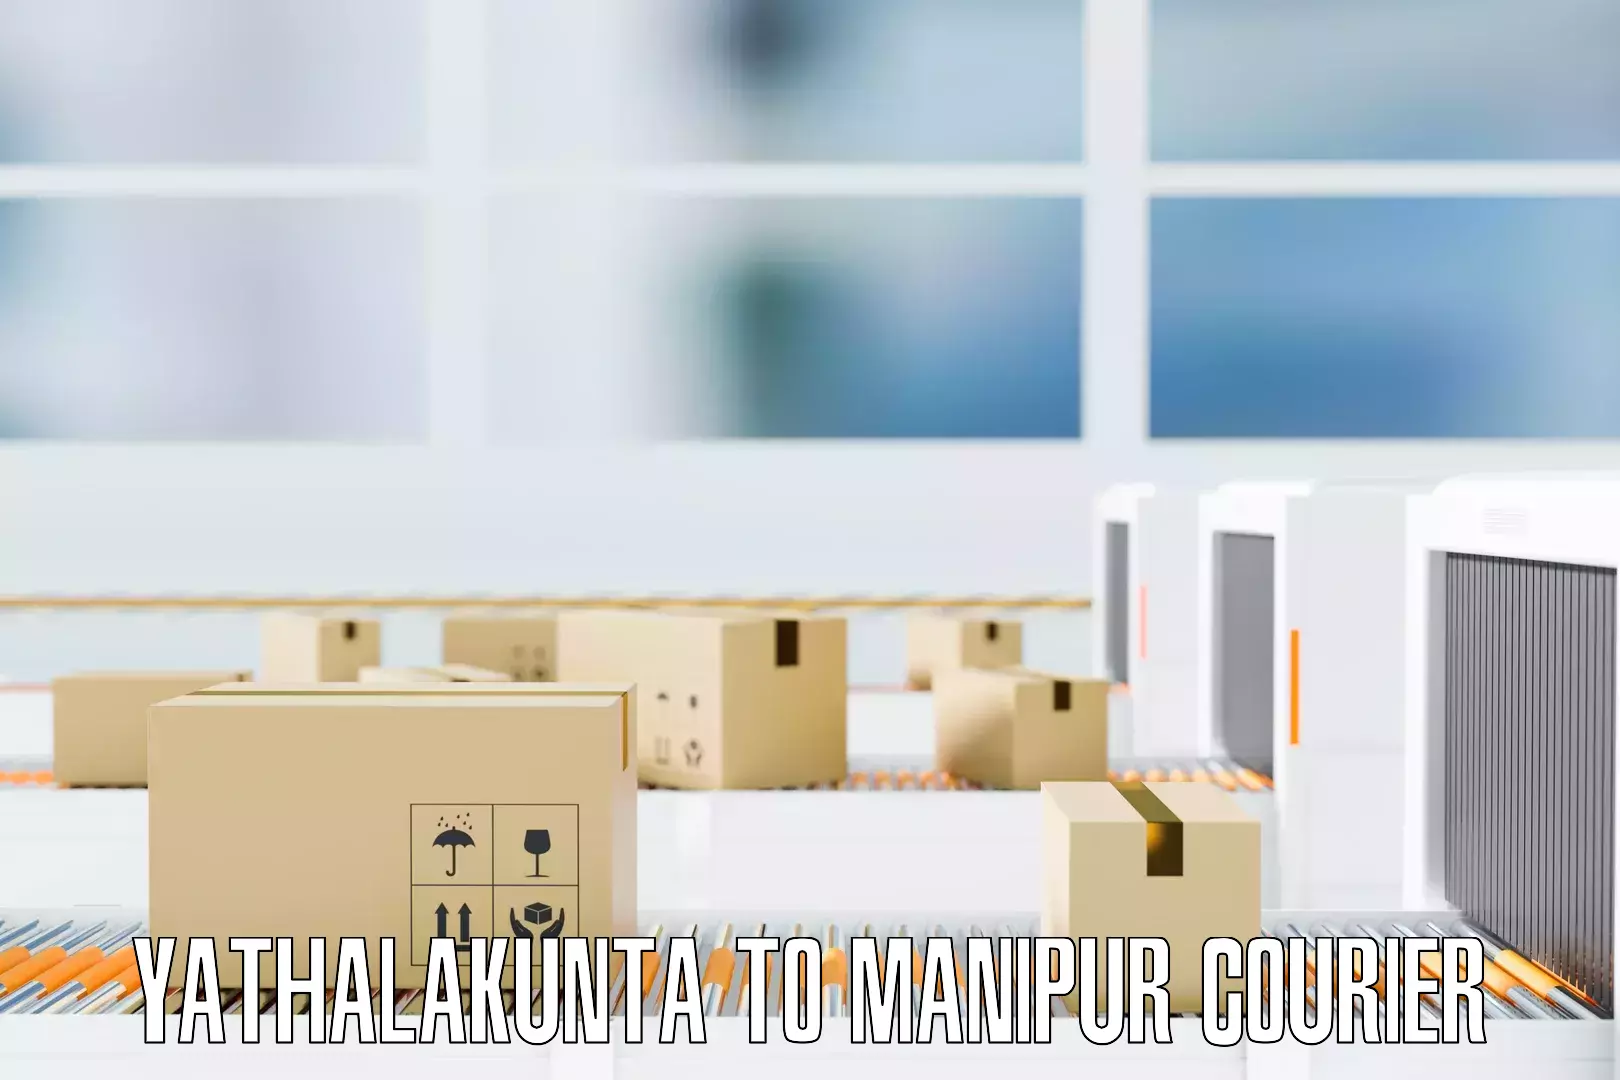 Reliable furniture transport Yathalakunta to NIT Manipur